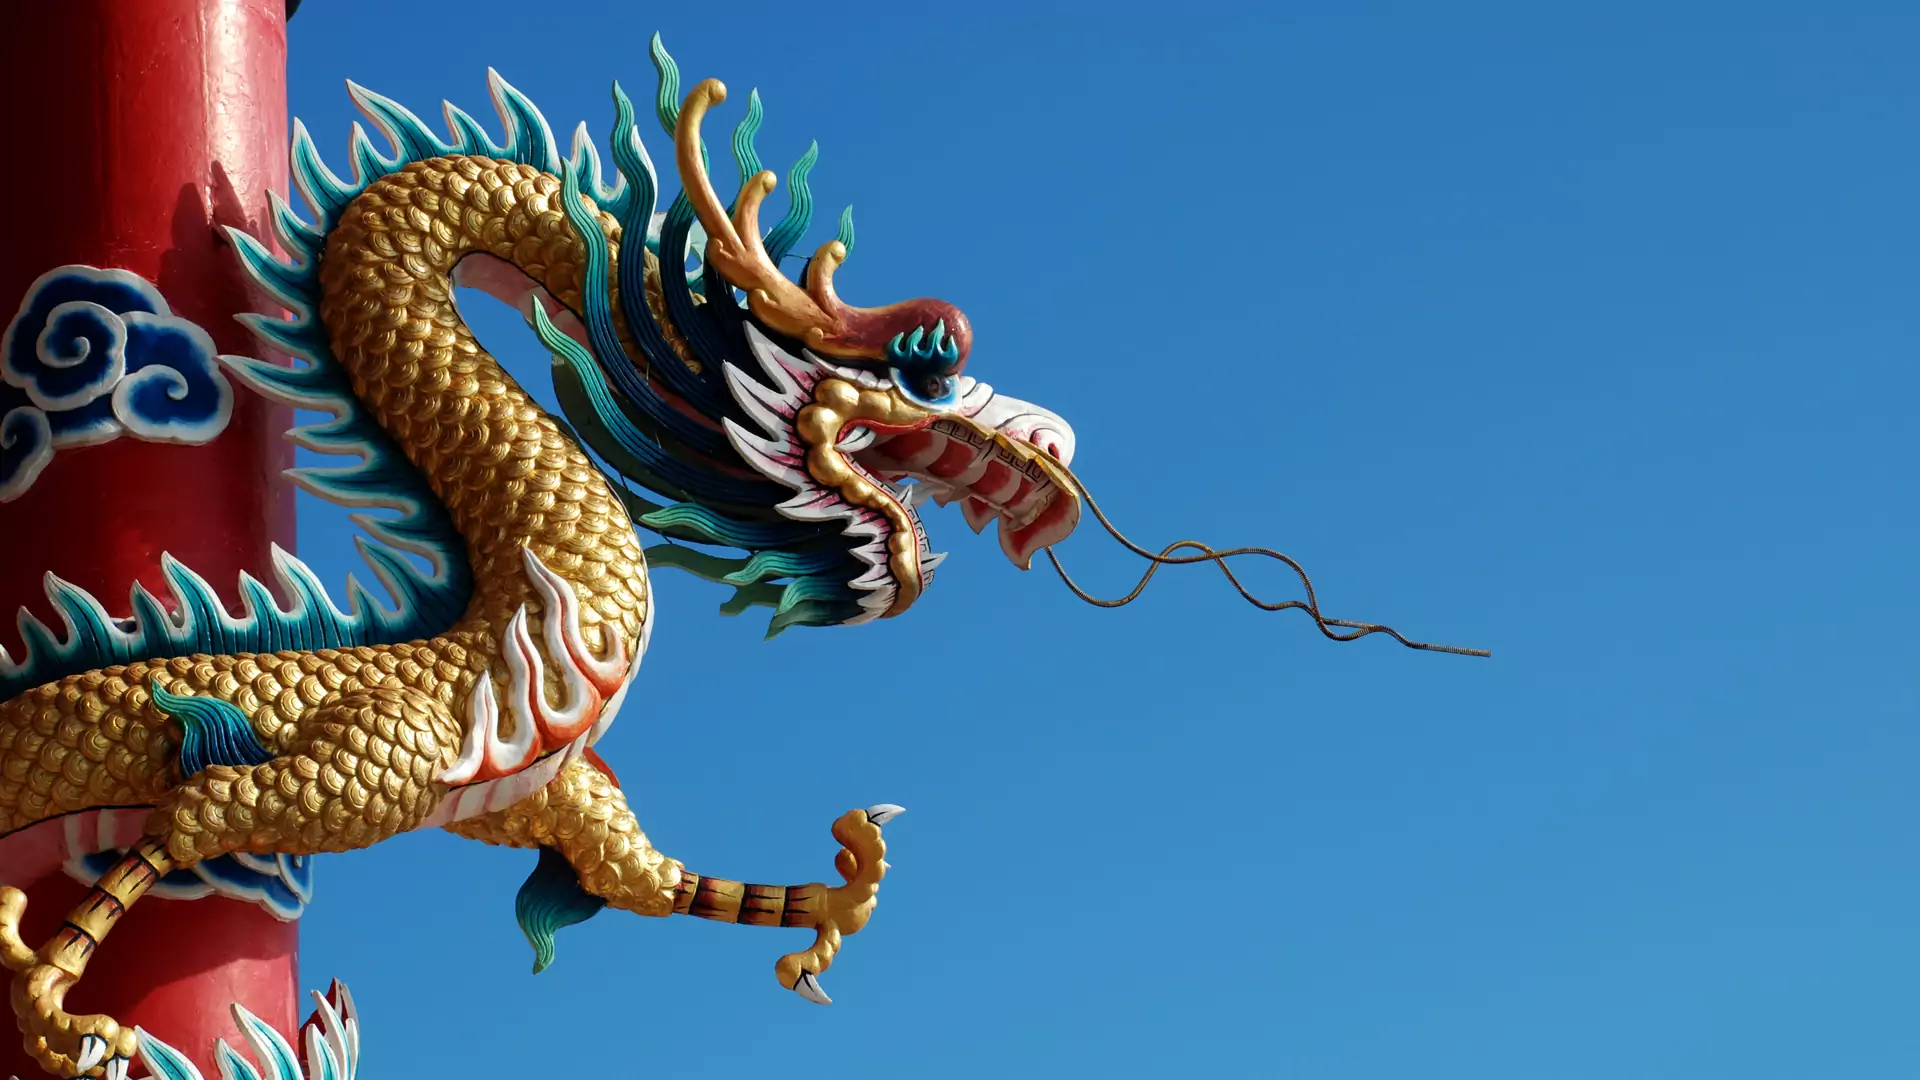 Co czeka cię w roku Drewnianego Smoka? Chiński horoskop wróży szczęście, ważne decyzje i próby